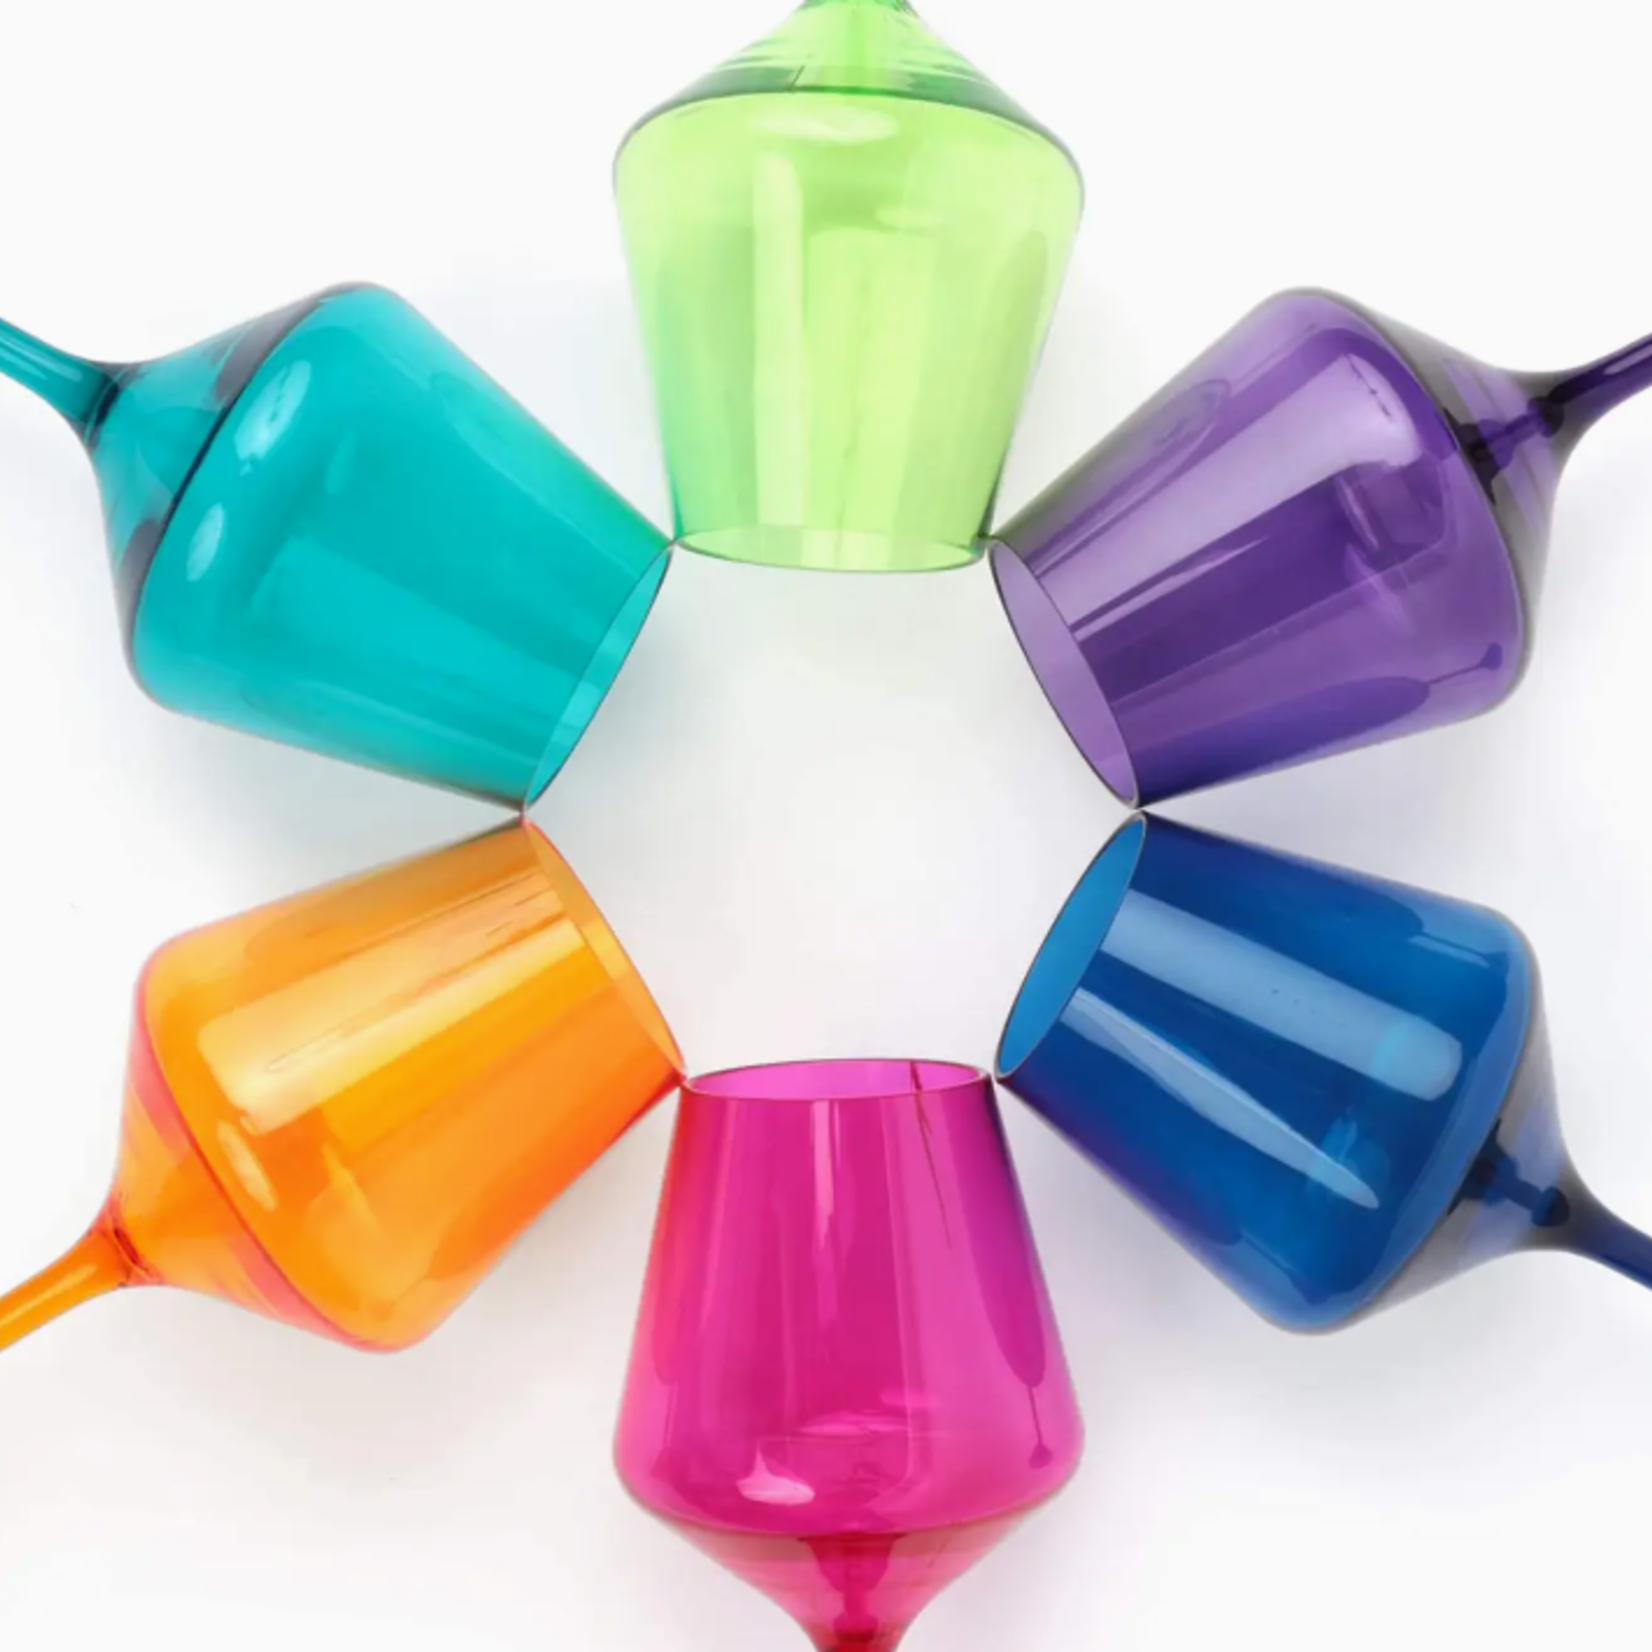 Faire/ Pop Design Set/6 Acrylic Stemmed Wine Glasses Colorful